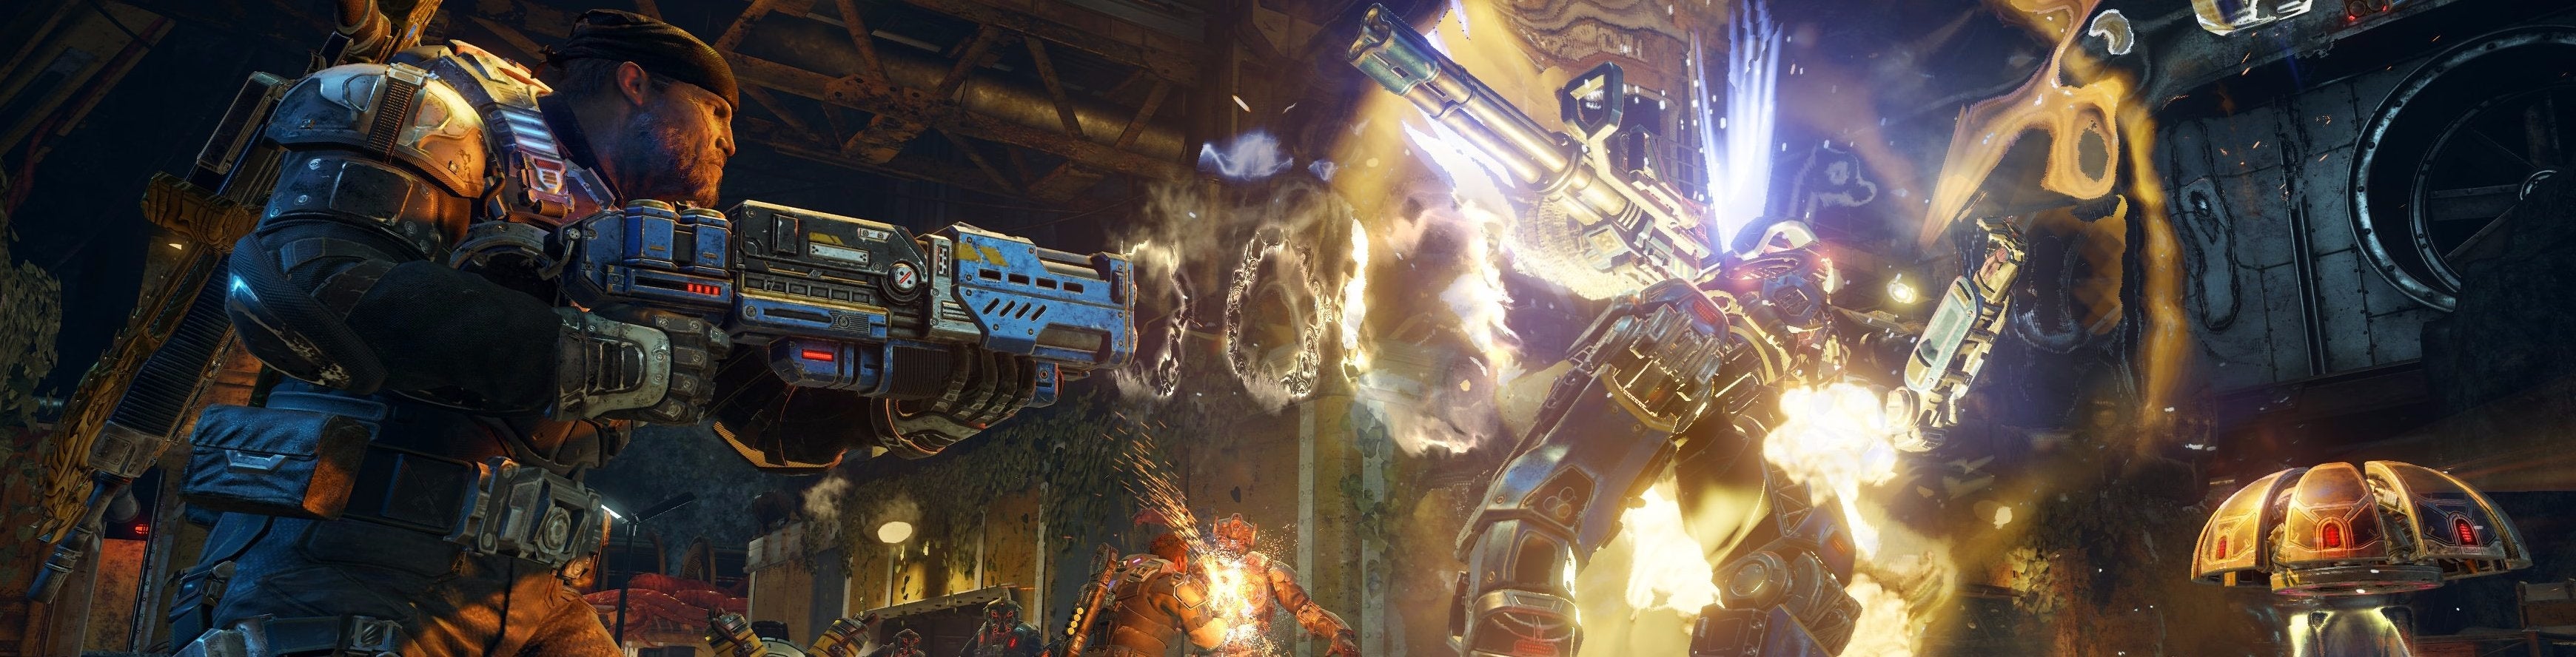 Image for DOJMY z rozehrání kampaně Gears of War 4